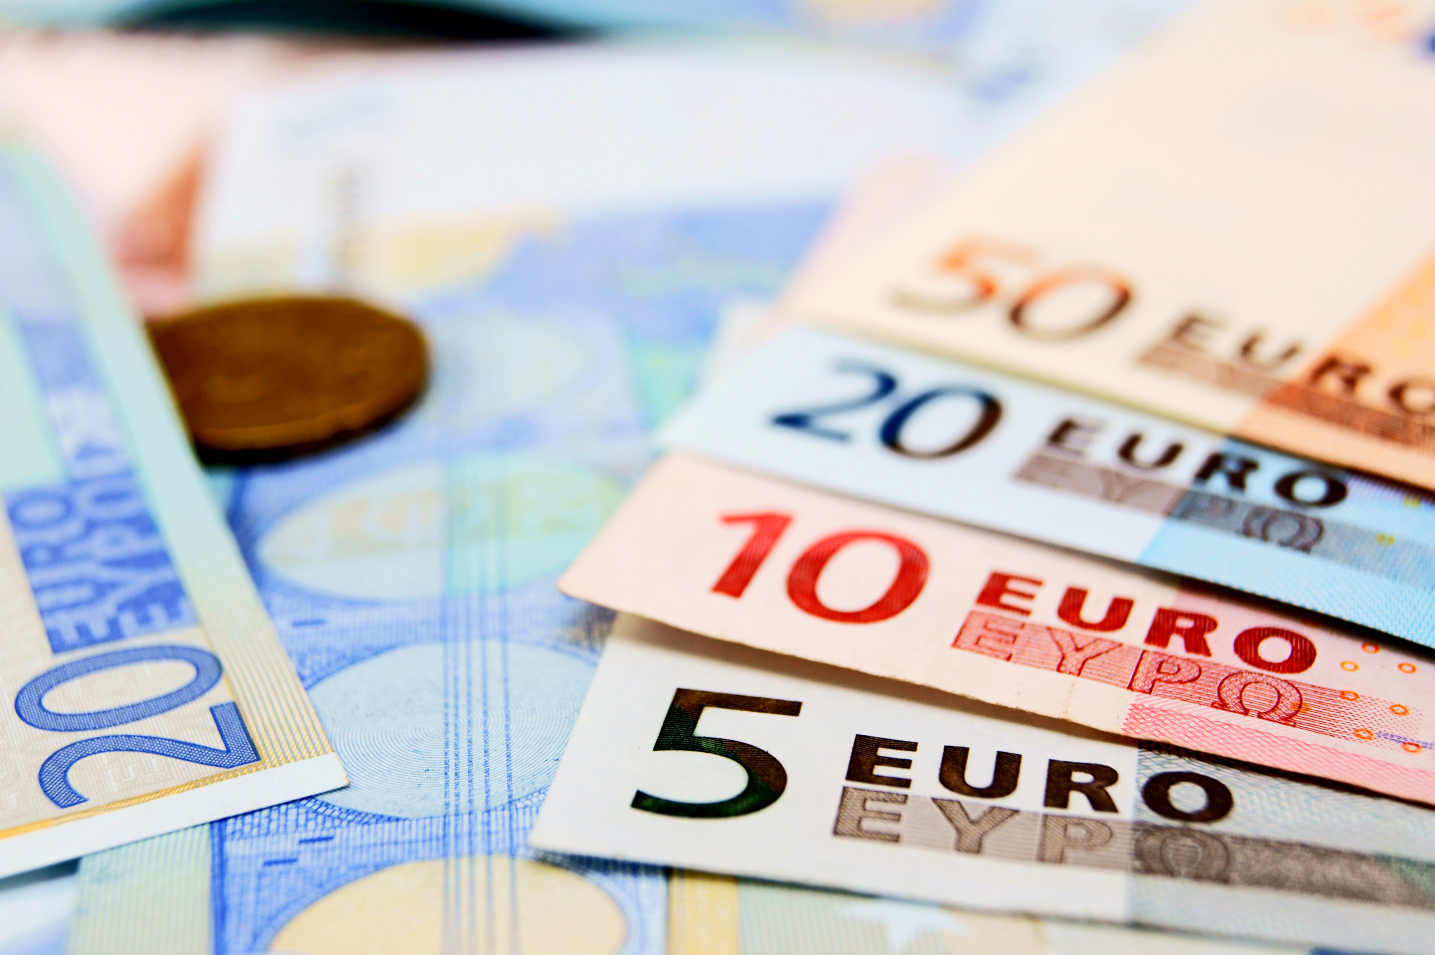 Fond PIO: Isplata jednokratne pomoći od 50 eura počinje sjutra